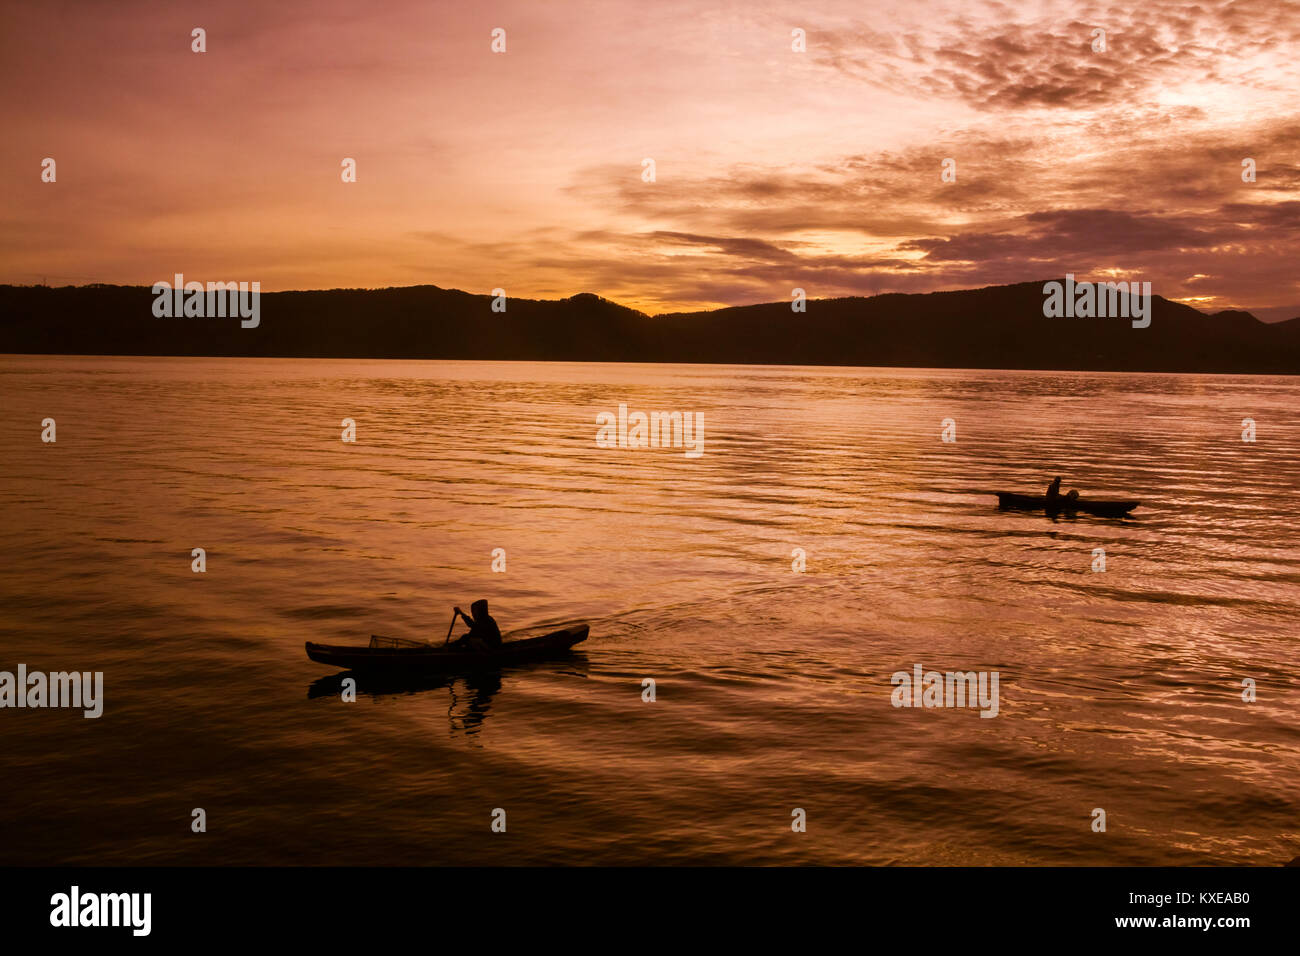 Sunset Sunrise with reflections at Lake Toba, Samosir Island, Indonesia. Stock Photo